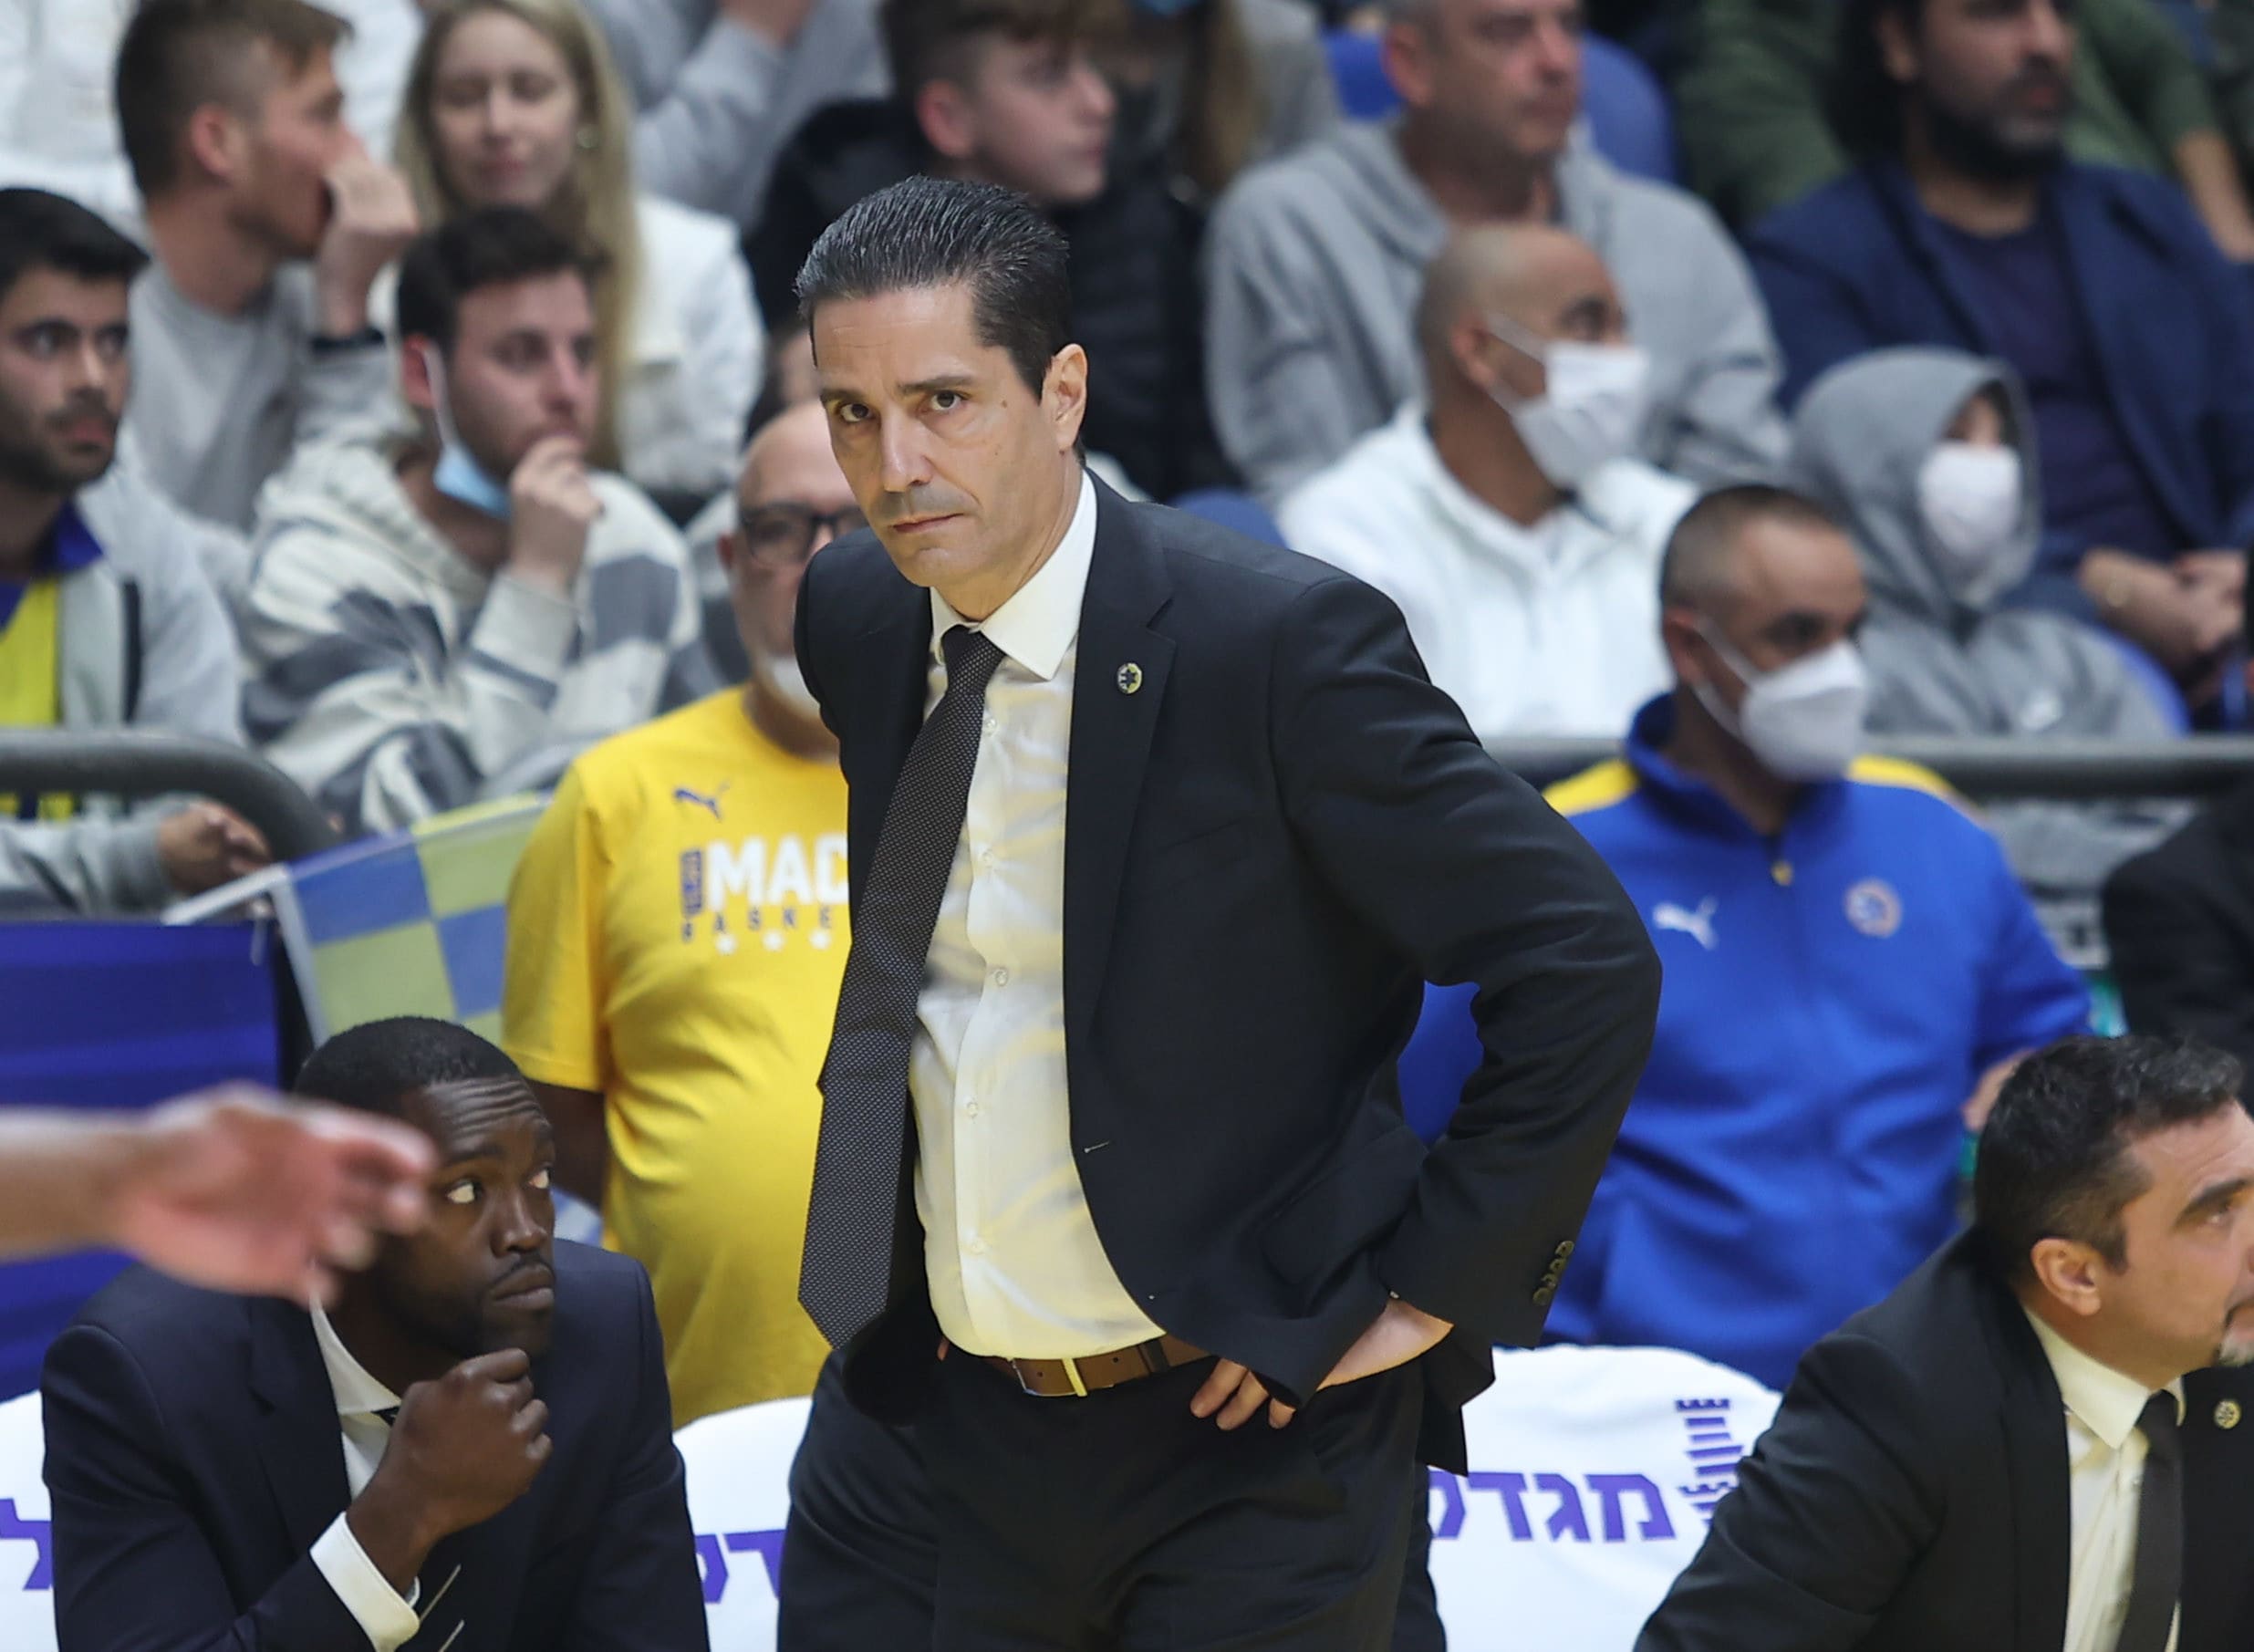 יאניס ספרופולוס מאמן מכבי תל אביב מאוכזב